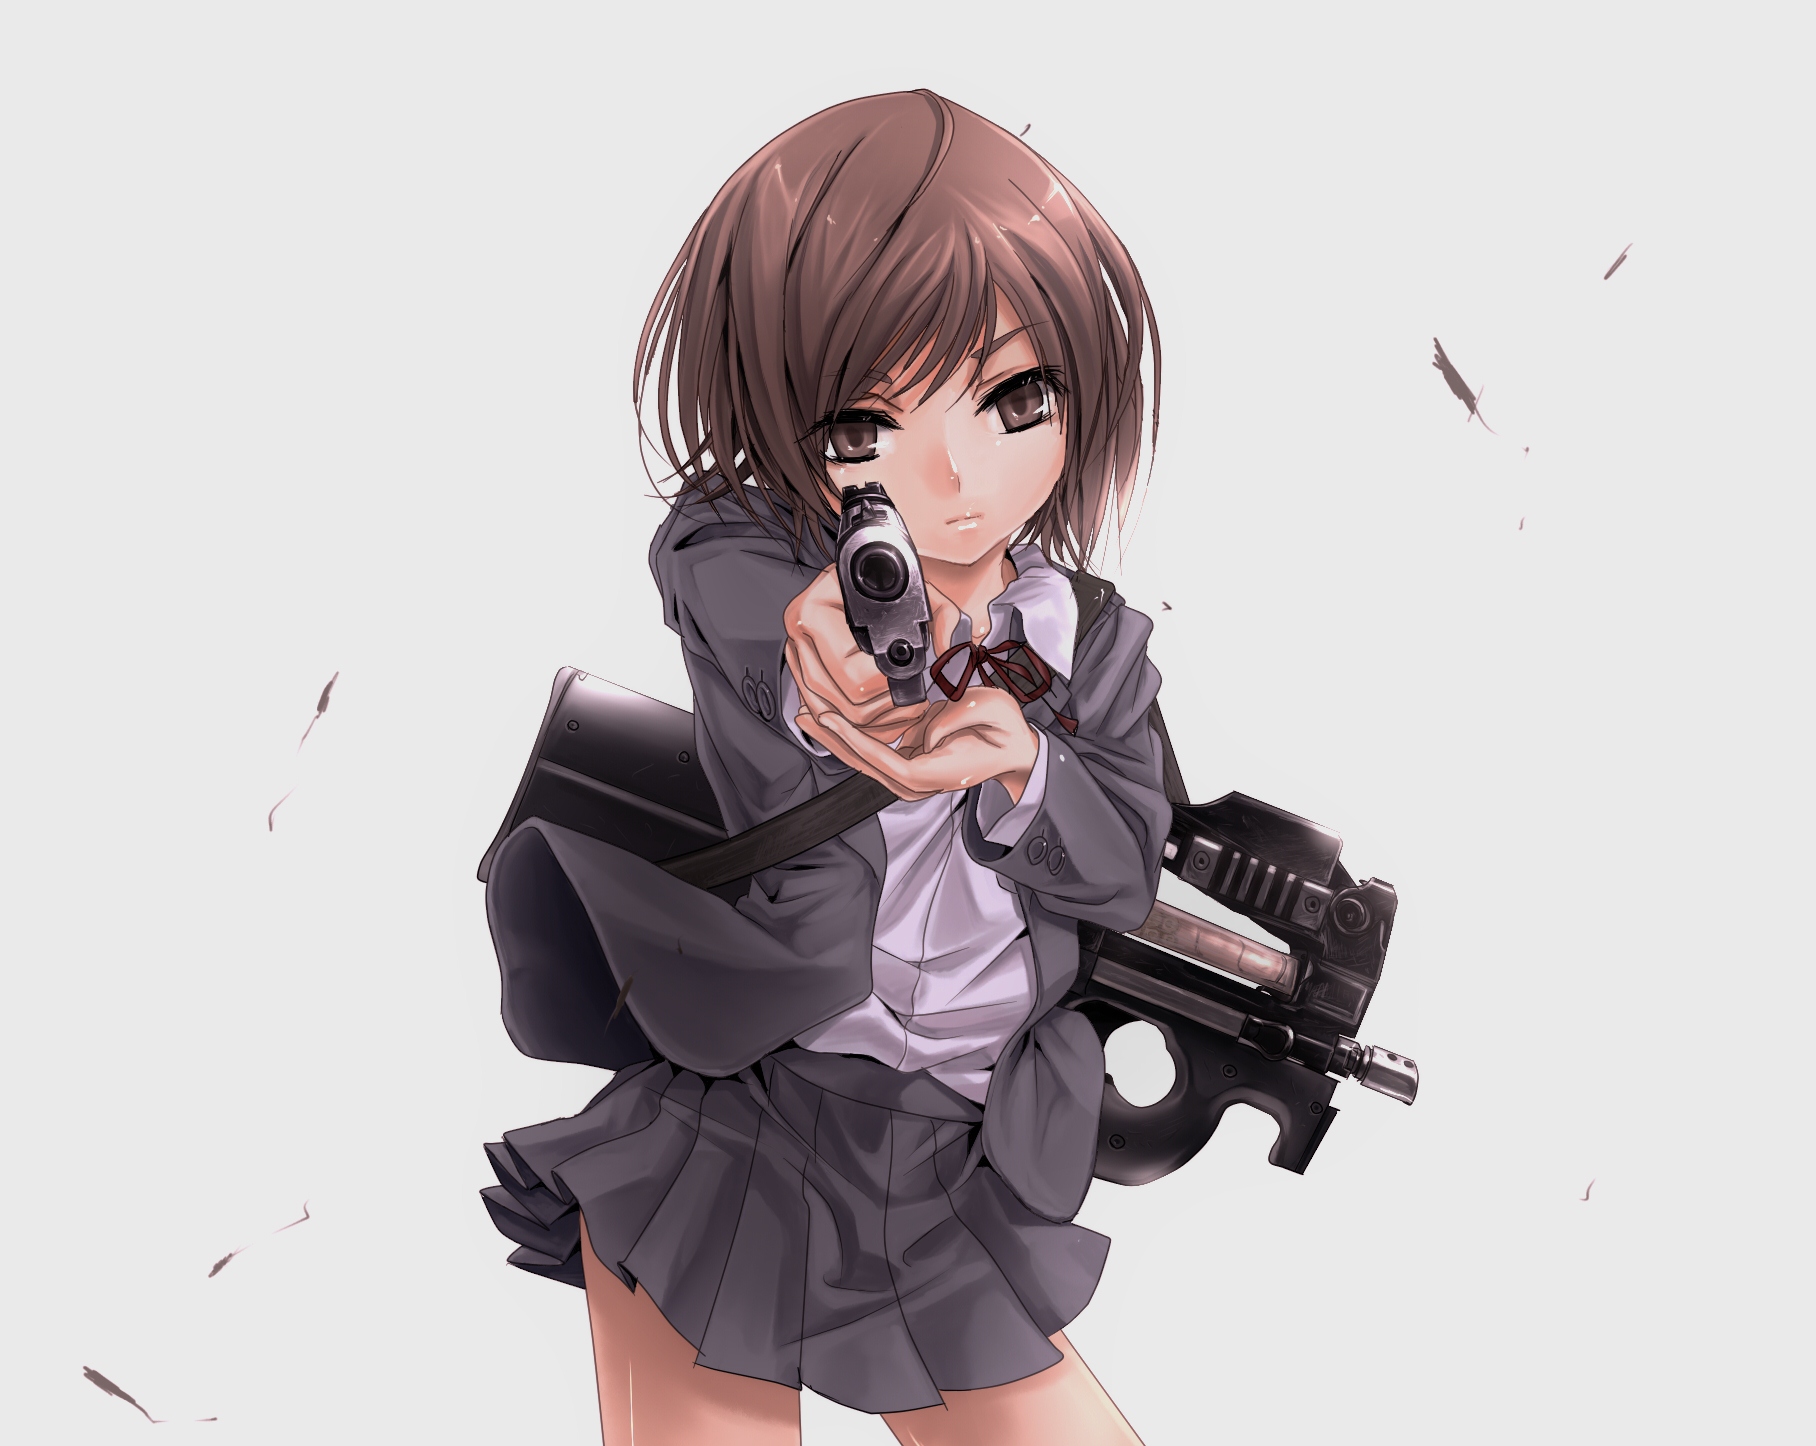 Download mobile wallpaper Anime, Gunslinger Girl for free.